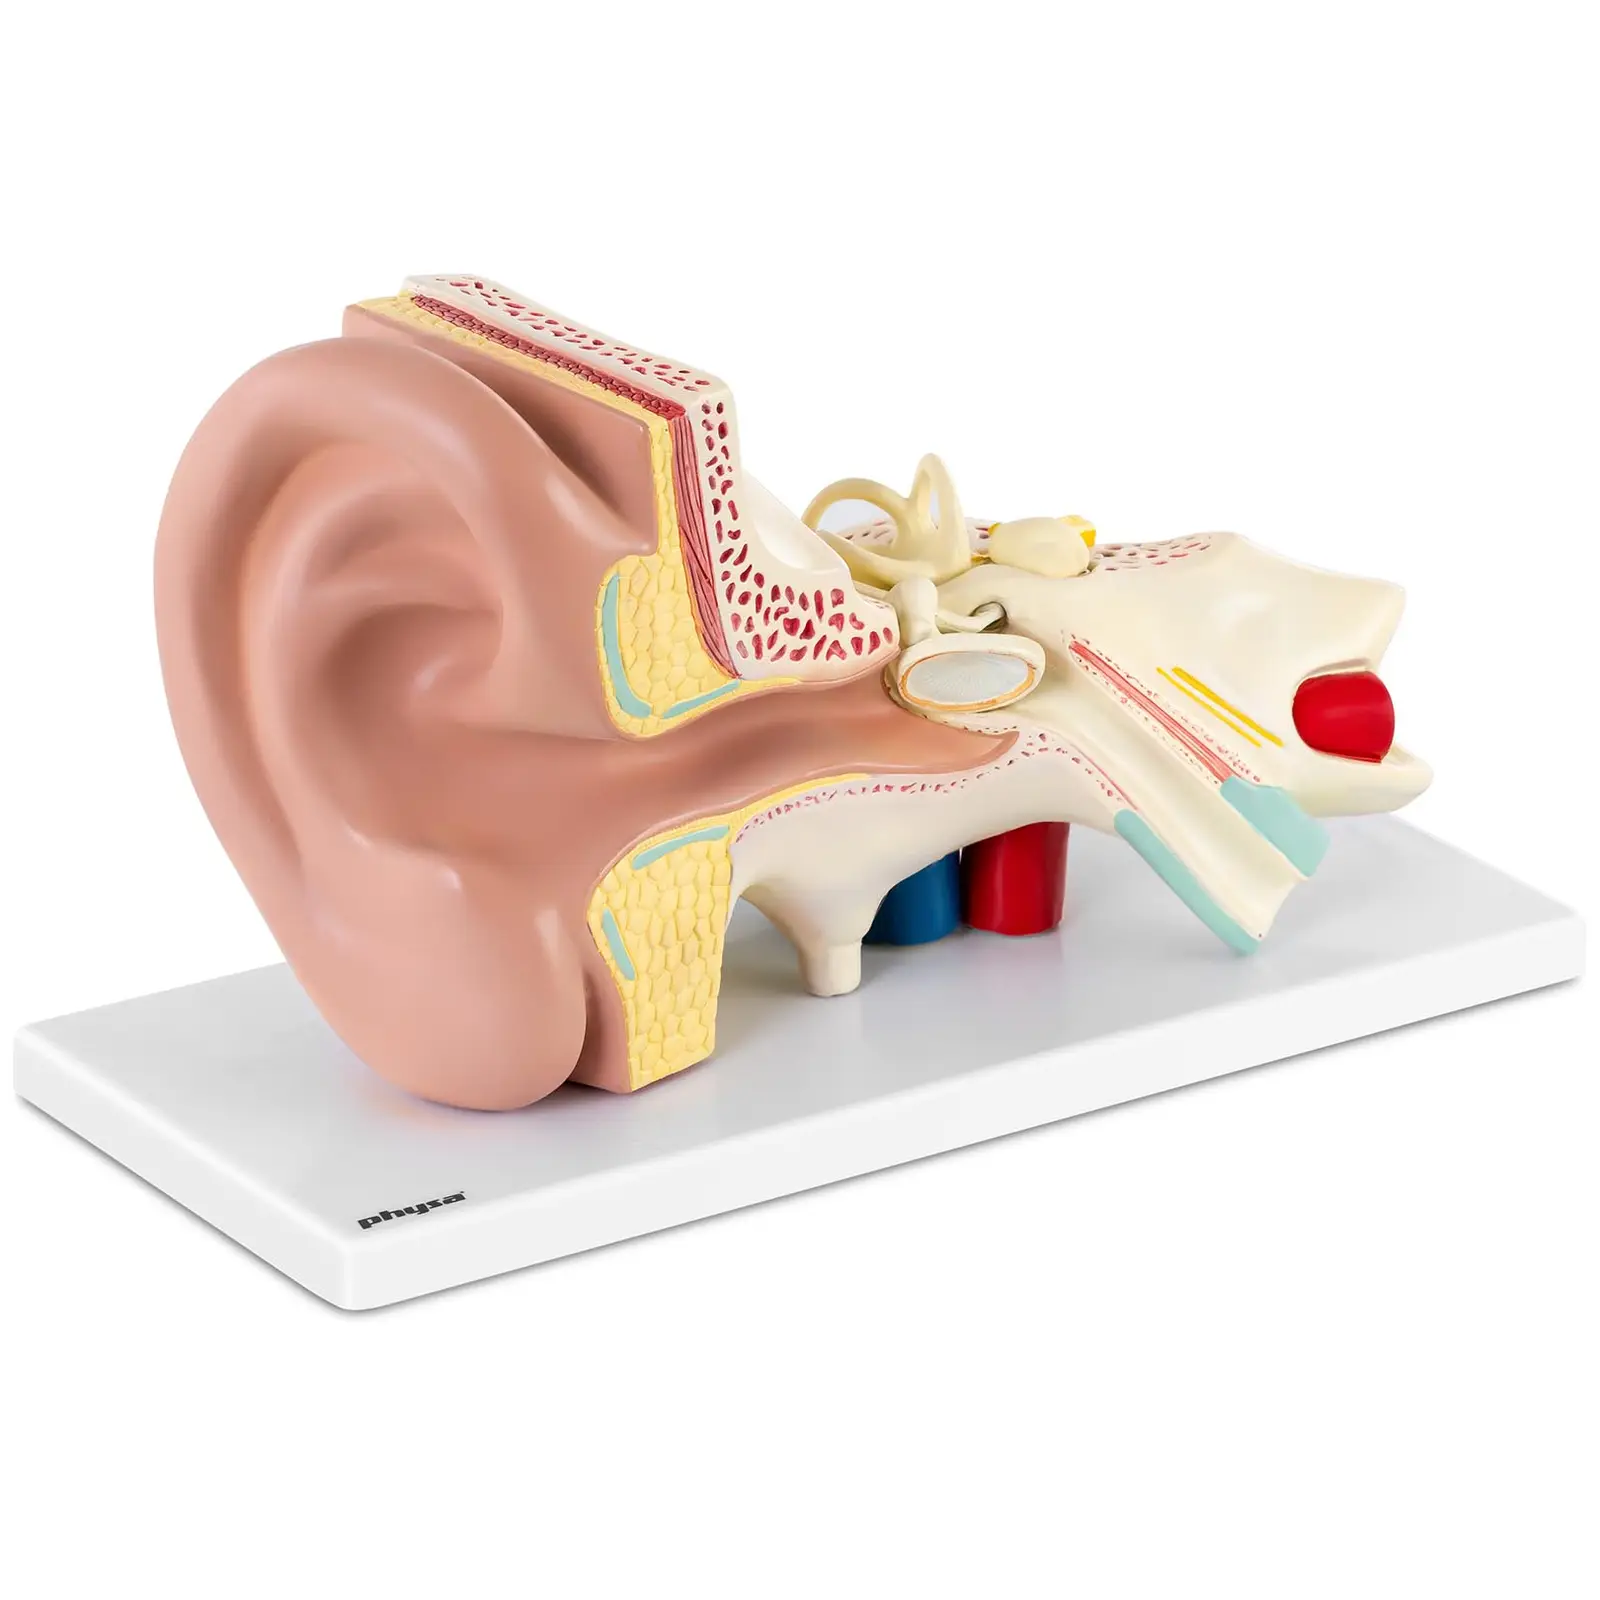 Modelo de oído - desmontable en 4 piezas - ampliado 3 veces